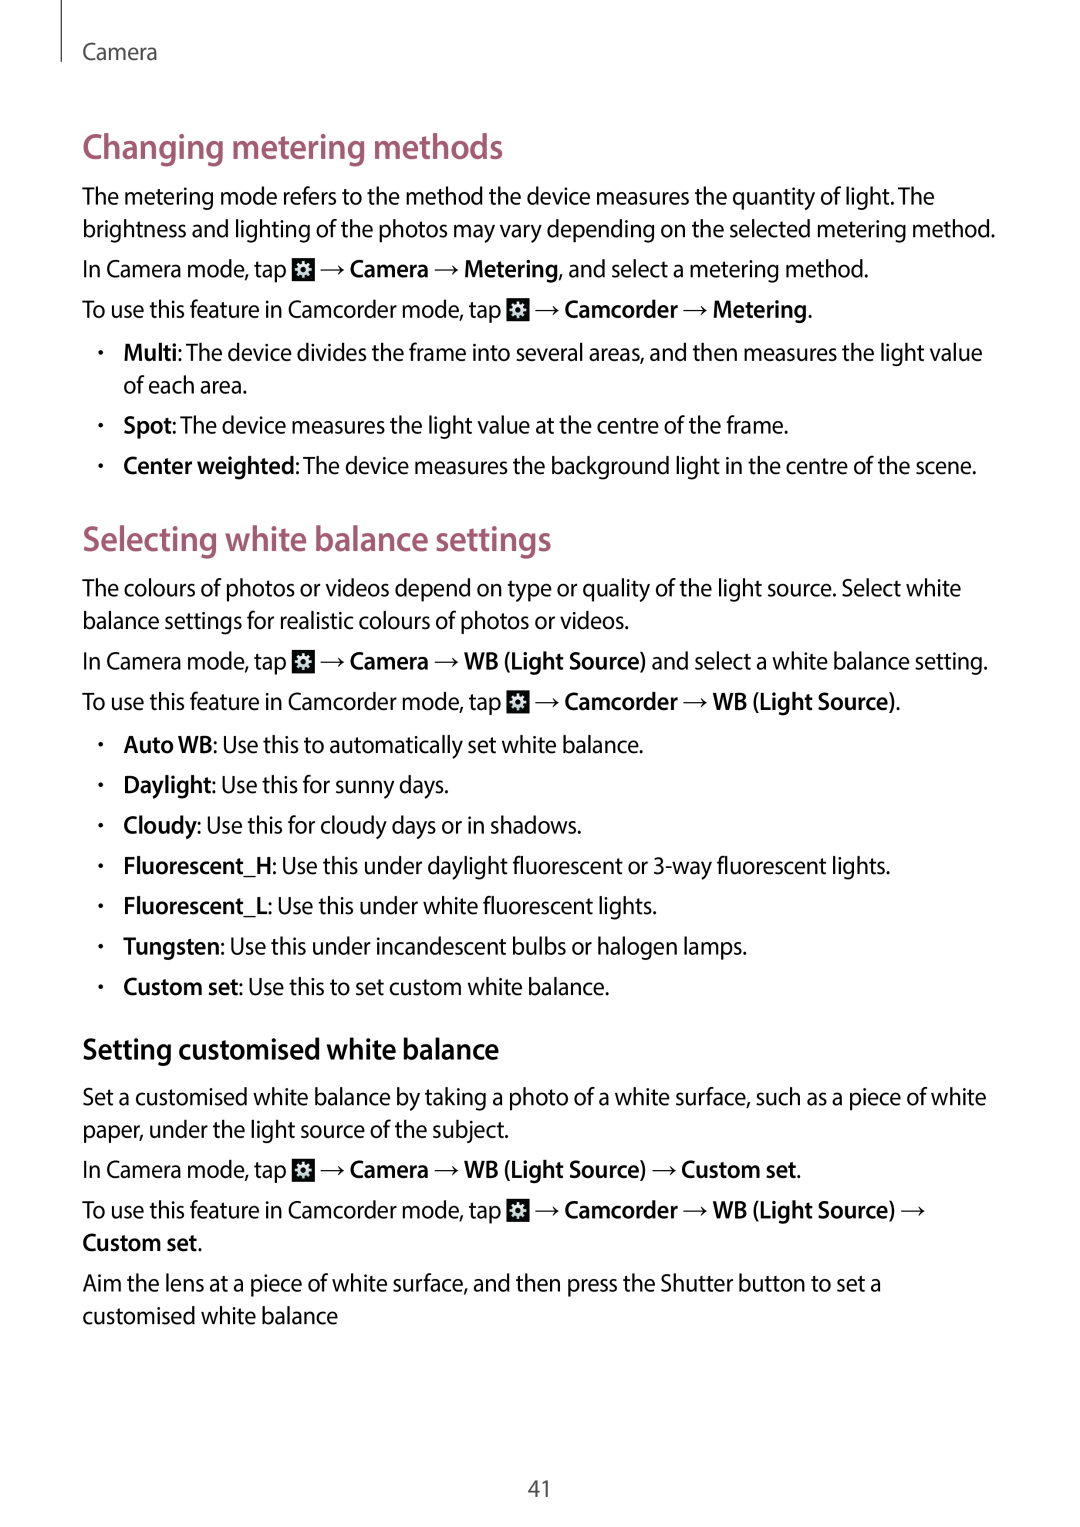 Samsung EK-GC100 Changing metering methods, Selecting white balance settings, Setting customised white balance, Camera 